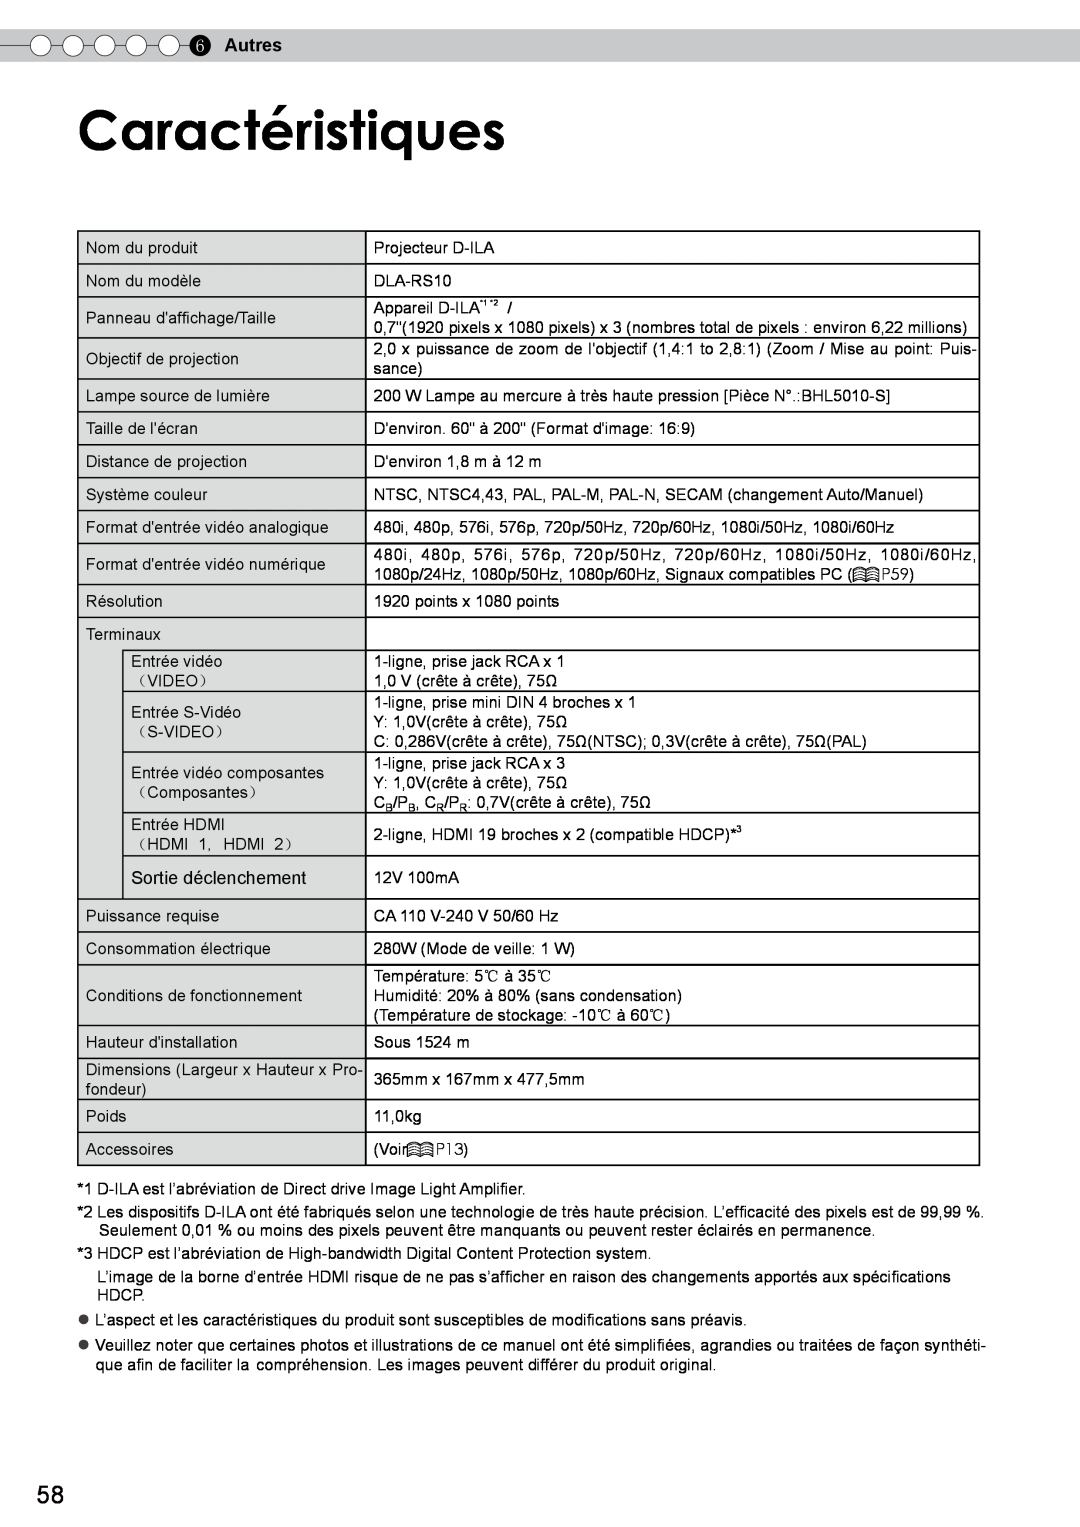 JVC DLA-RS10 manual Caractéristiques, Autres, Sortie déclenchement 